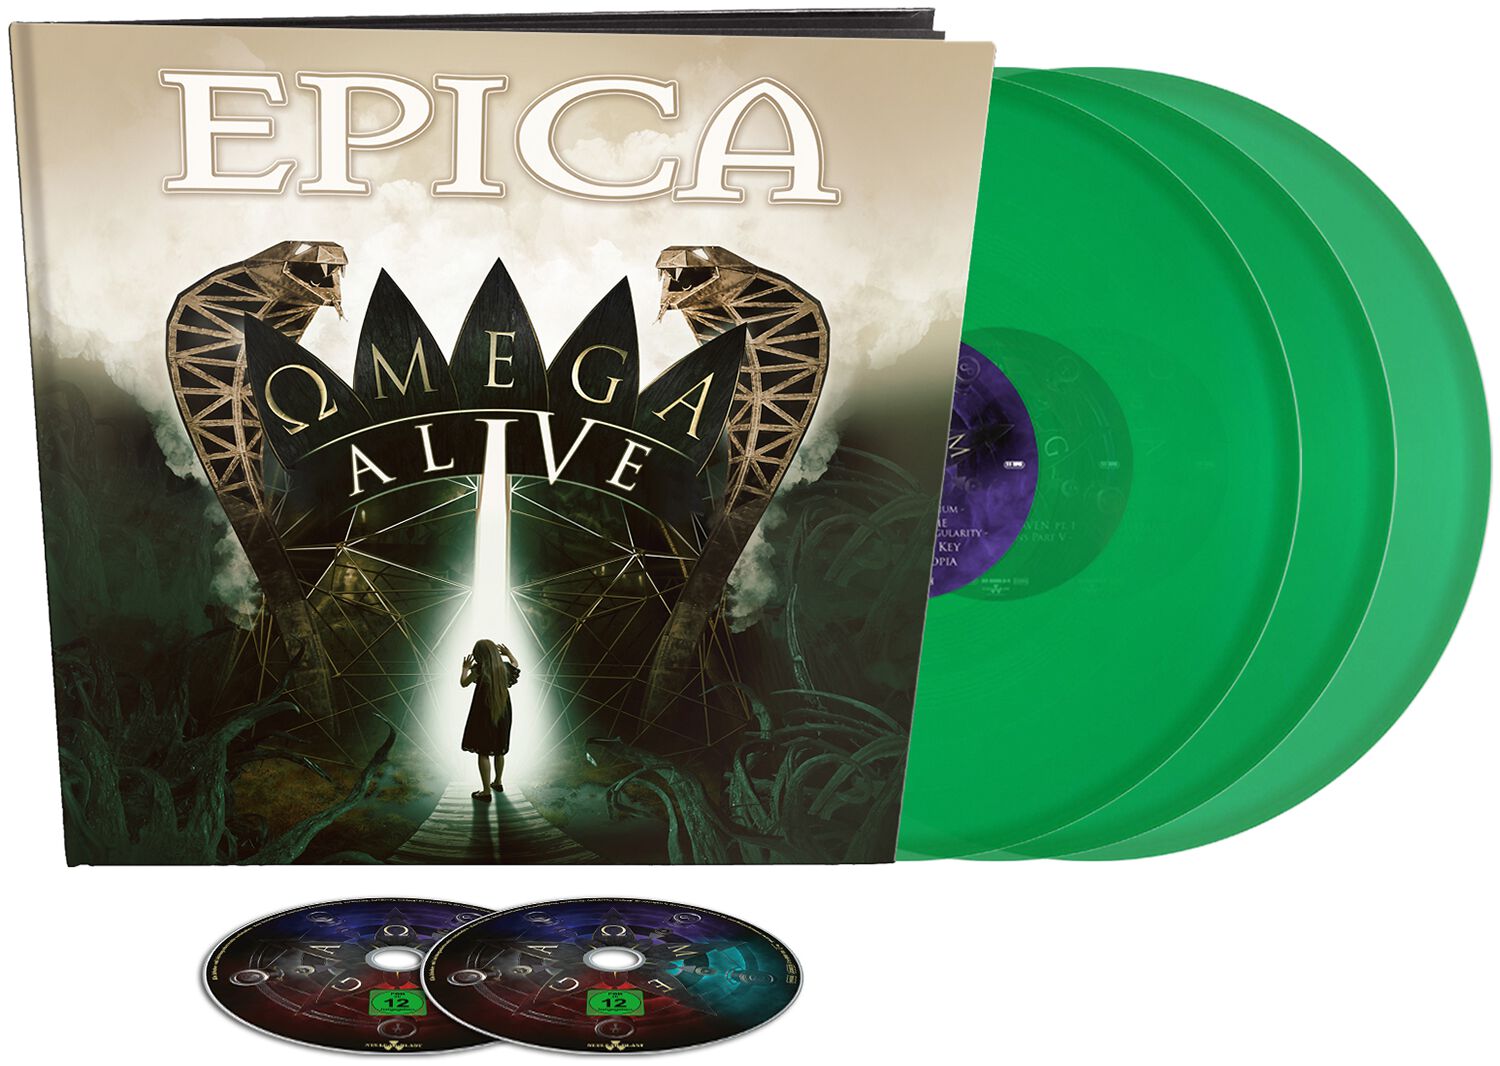 Image of Epica Omega Alive 3-LP & DVD Standard